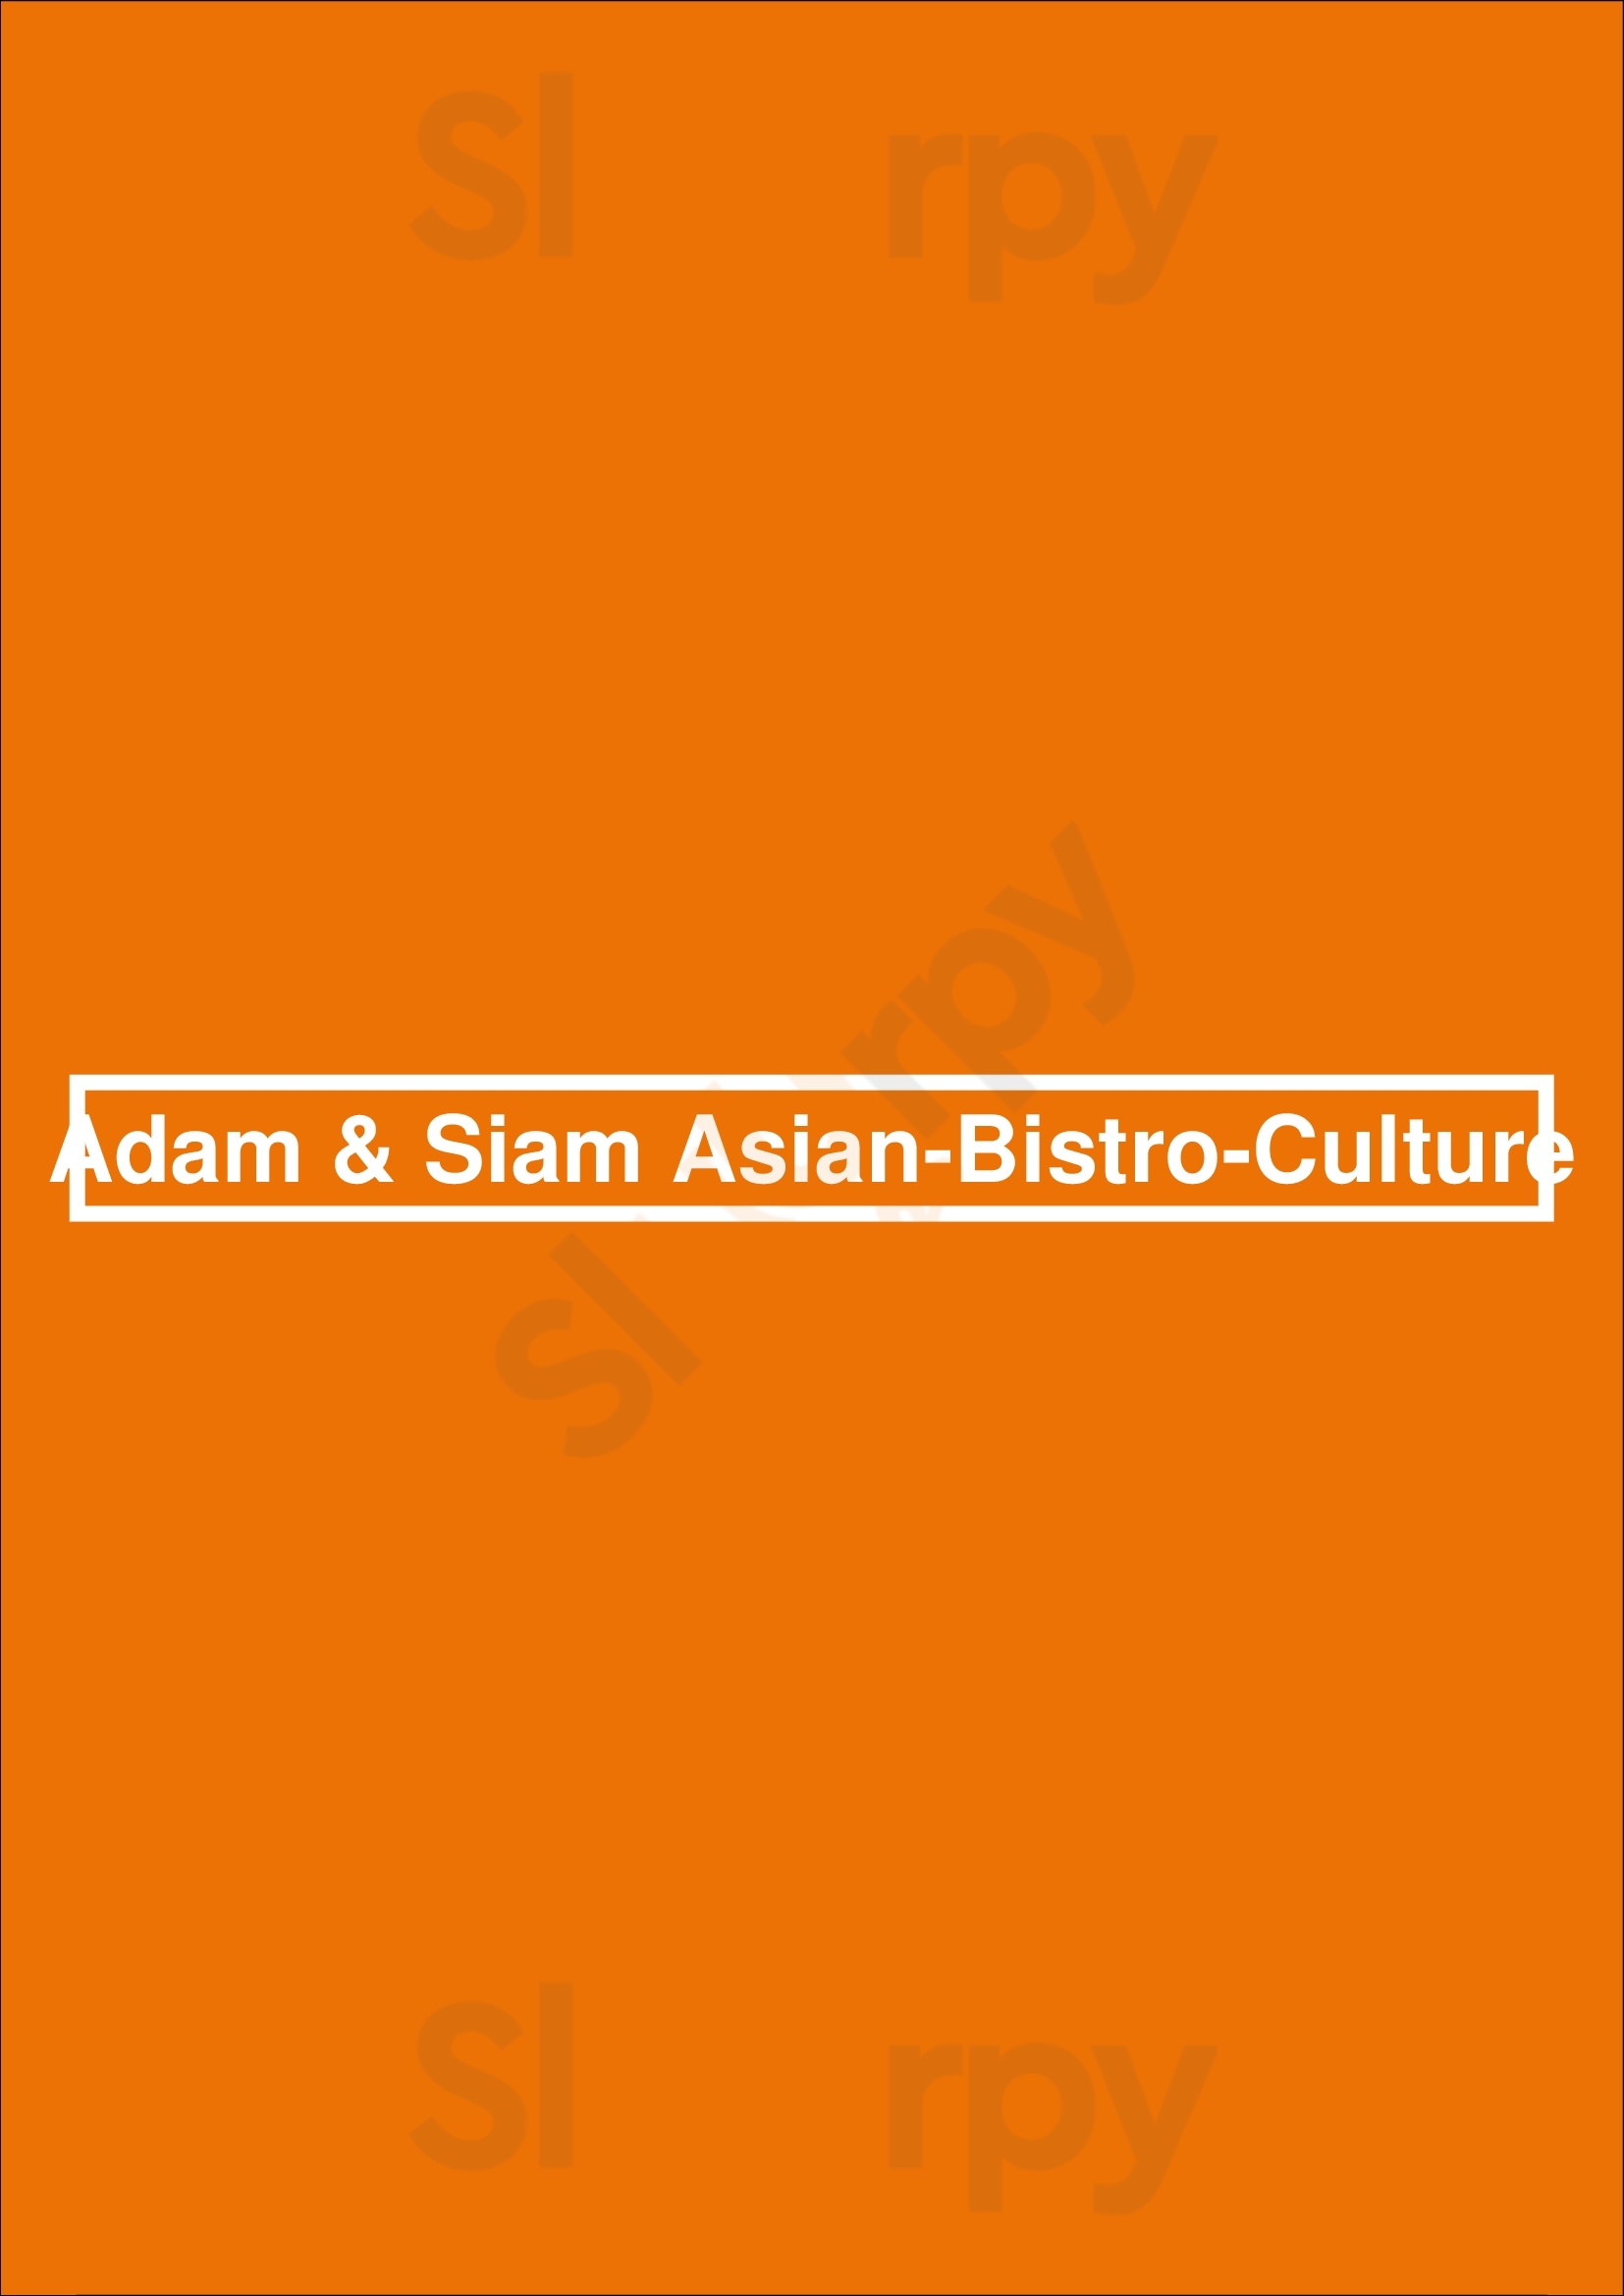 Adam & Siam Asian-bistro-culture Amsterdam Menu - 1